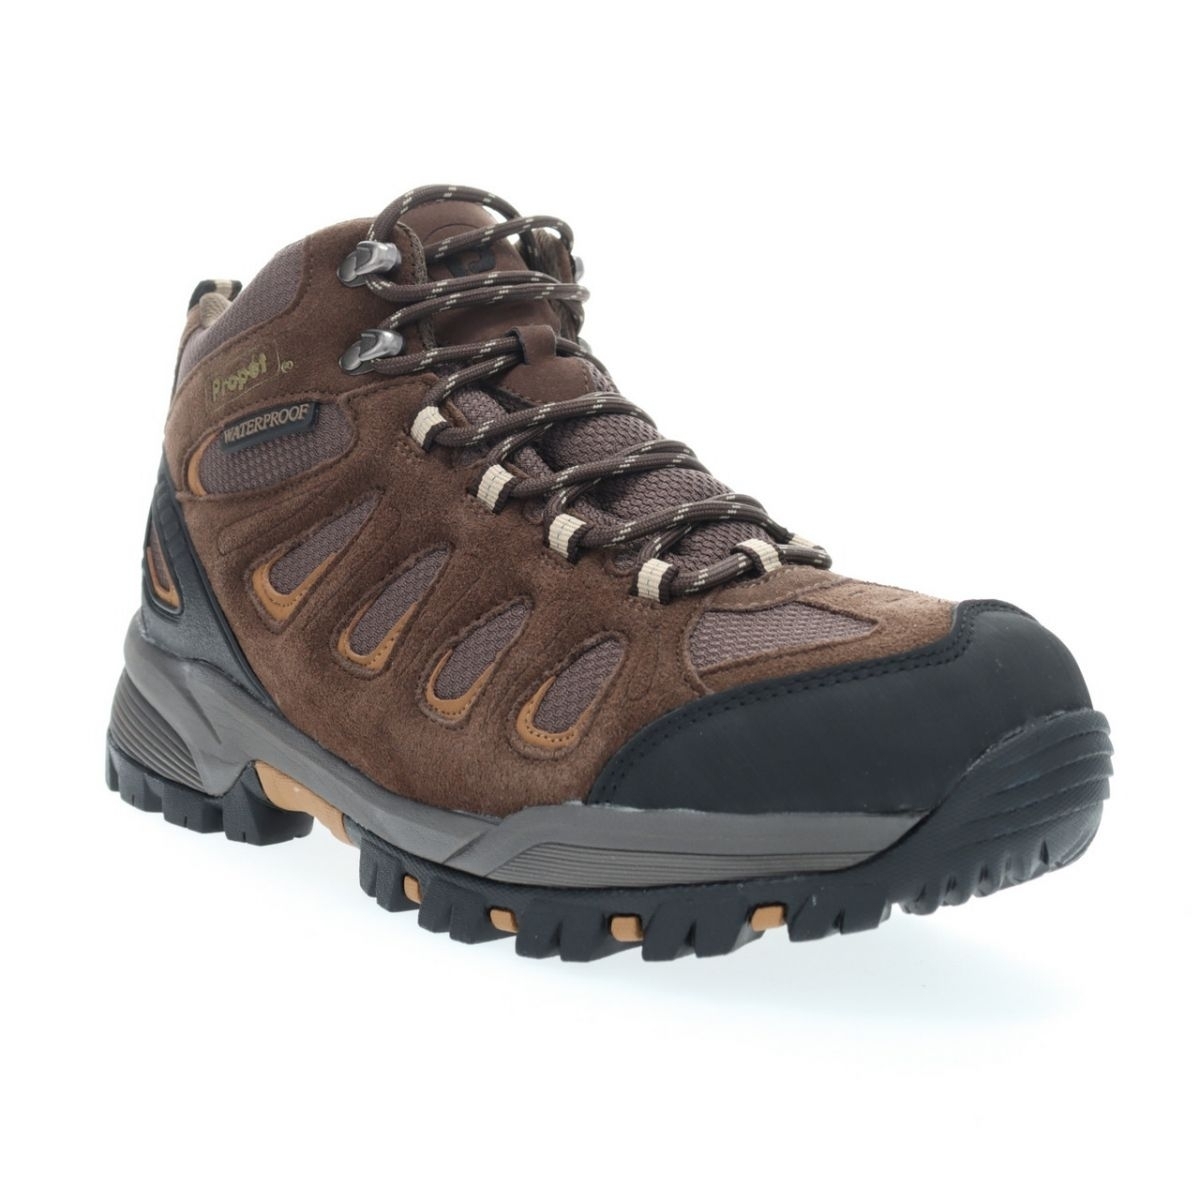 Propet Men's Ridge Walker Hiking Boot Brown - M3599BR 8 XX US Men BROWN - BROWN, 10